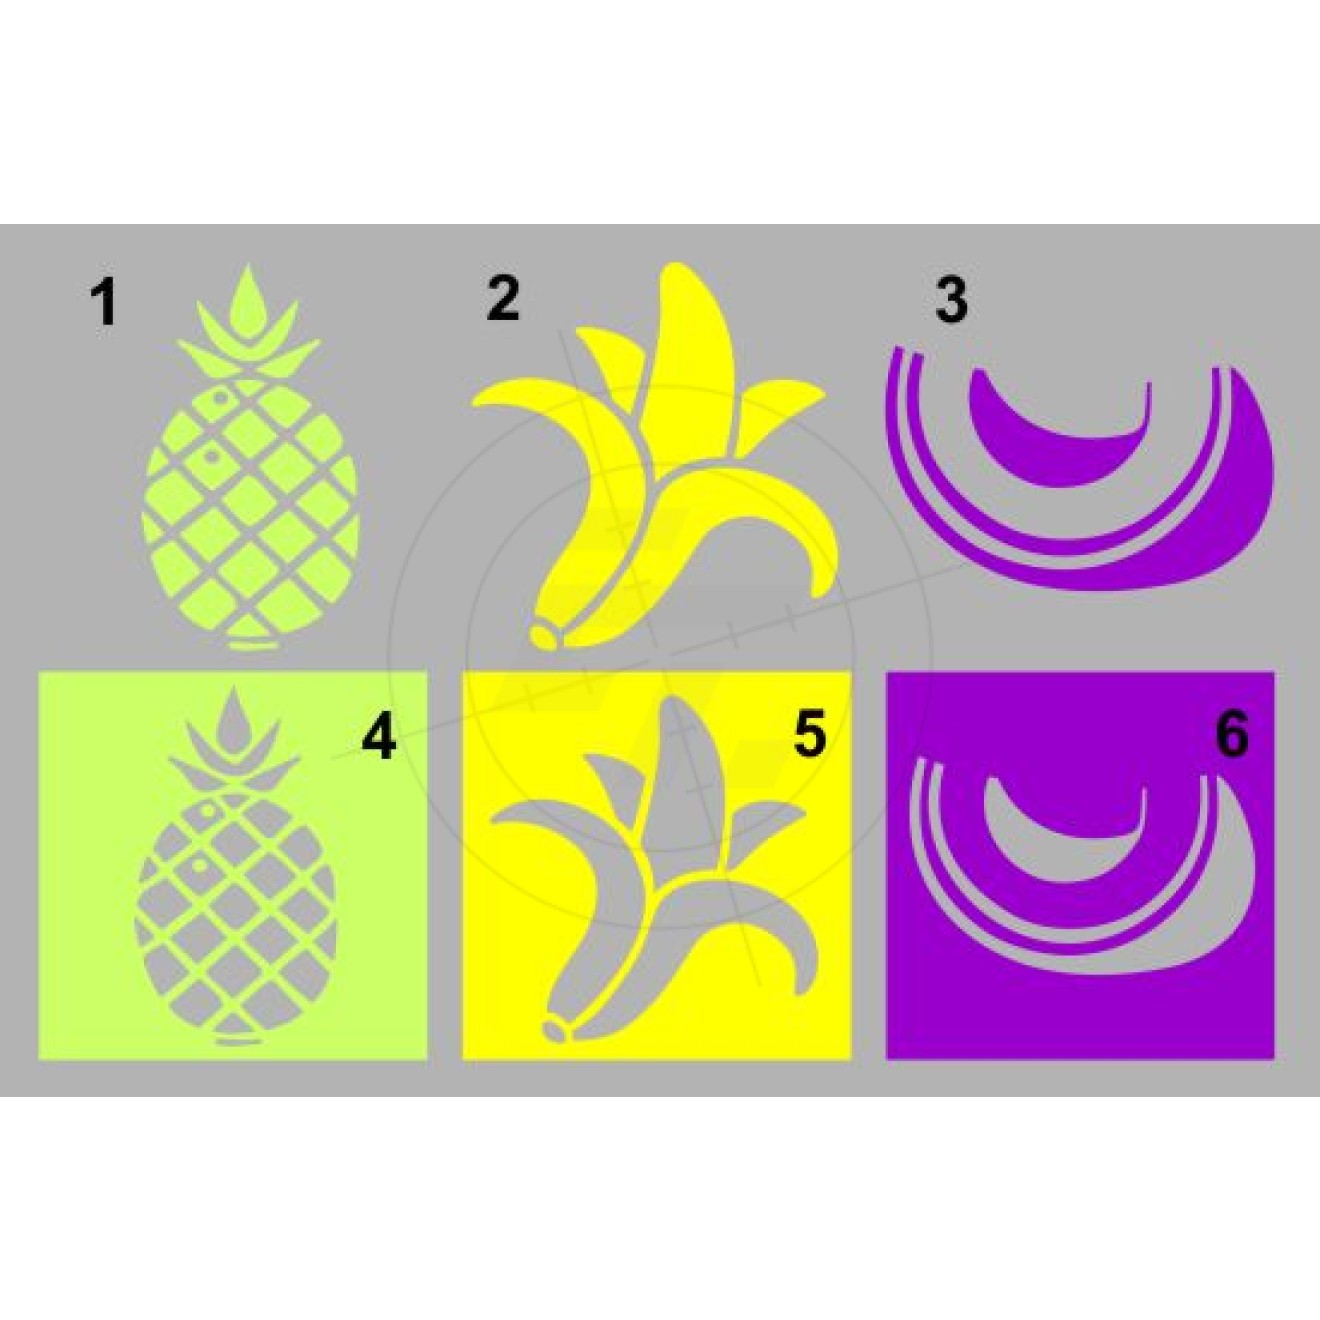 Tropical fruits, pineapple, banana, melon, melon slice